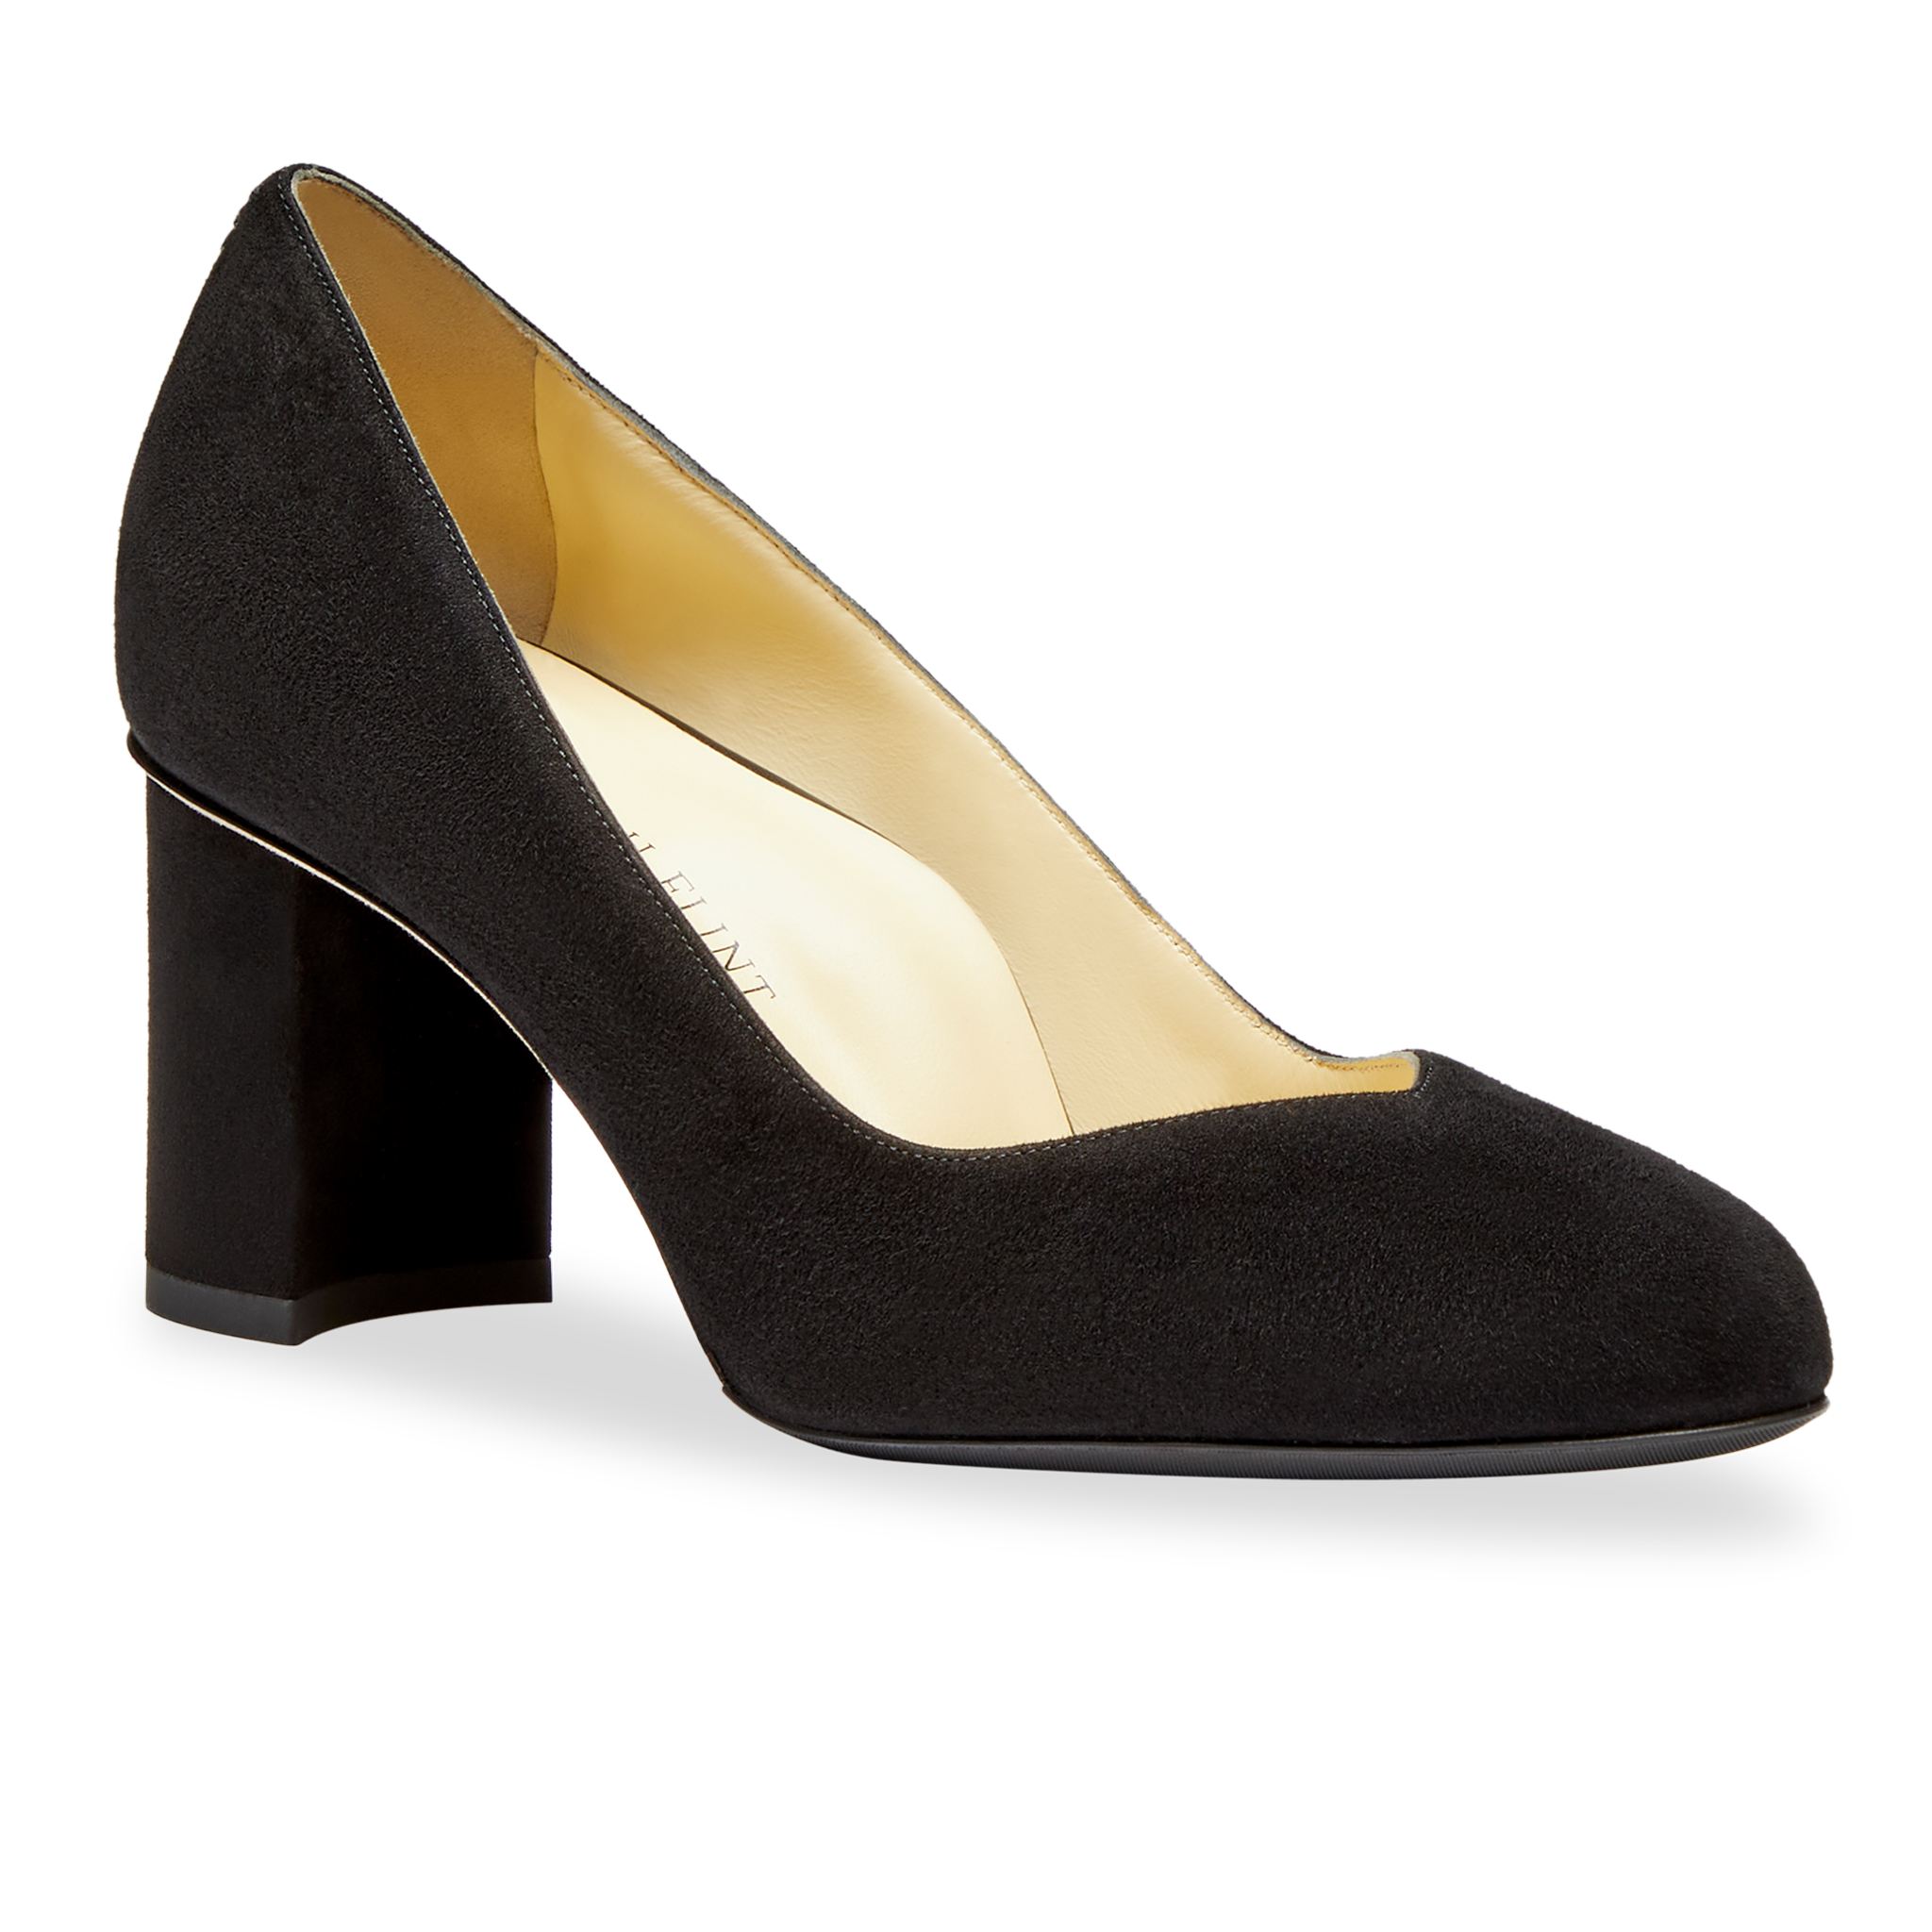 Sherrif Shoes Heels Black - Buy Sherrif Shoes Heels Black online in India